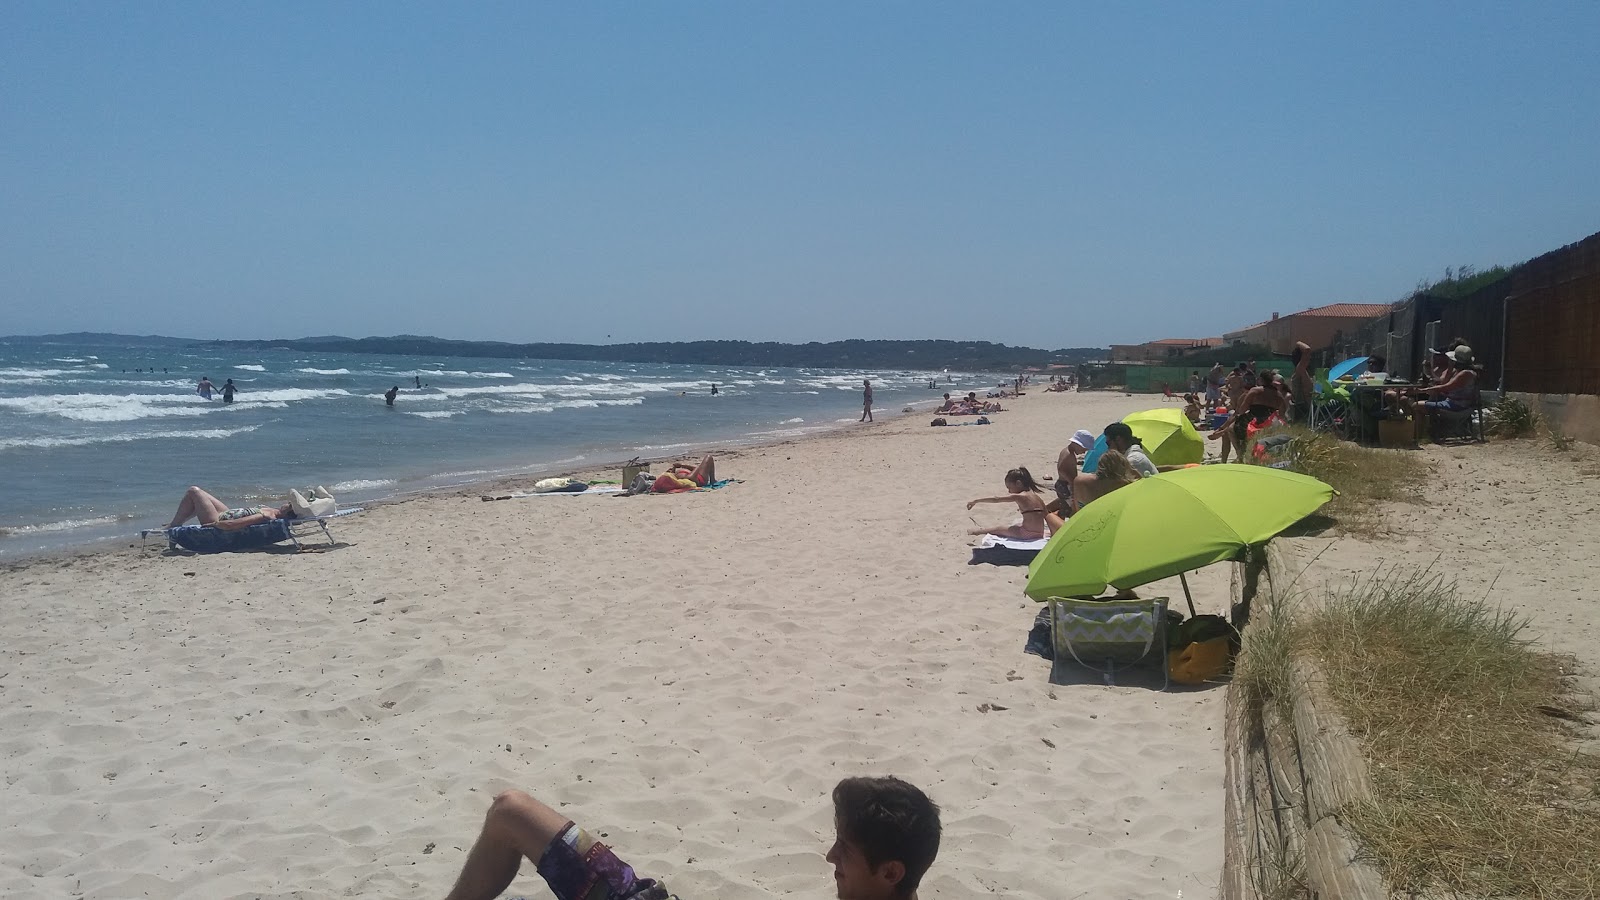 Capte beach'in fotoğrafı - rahatlamayı sevenler arasında popüler bir yer